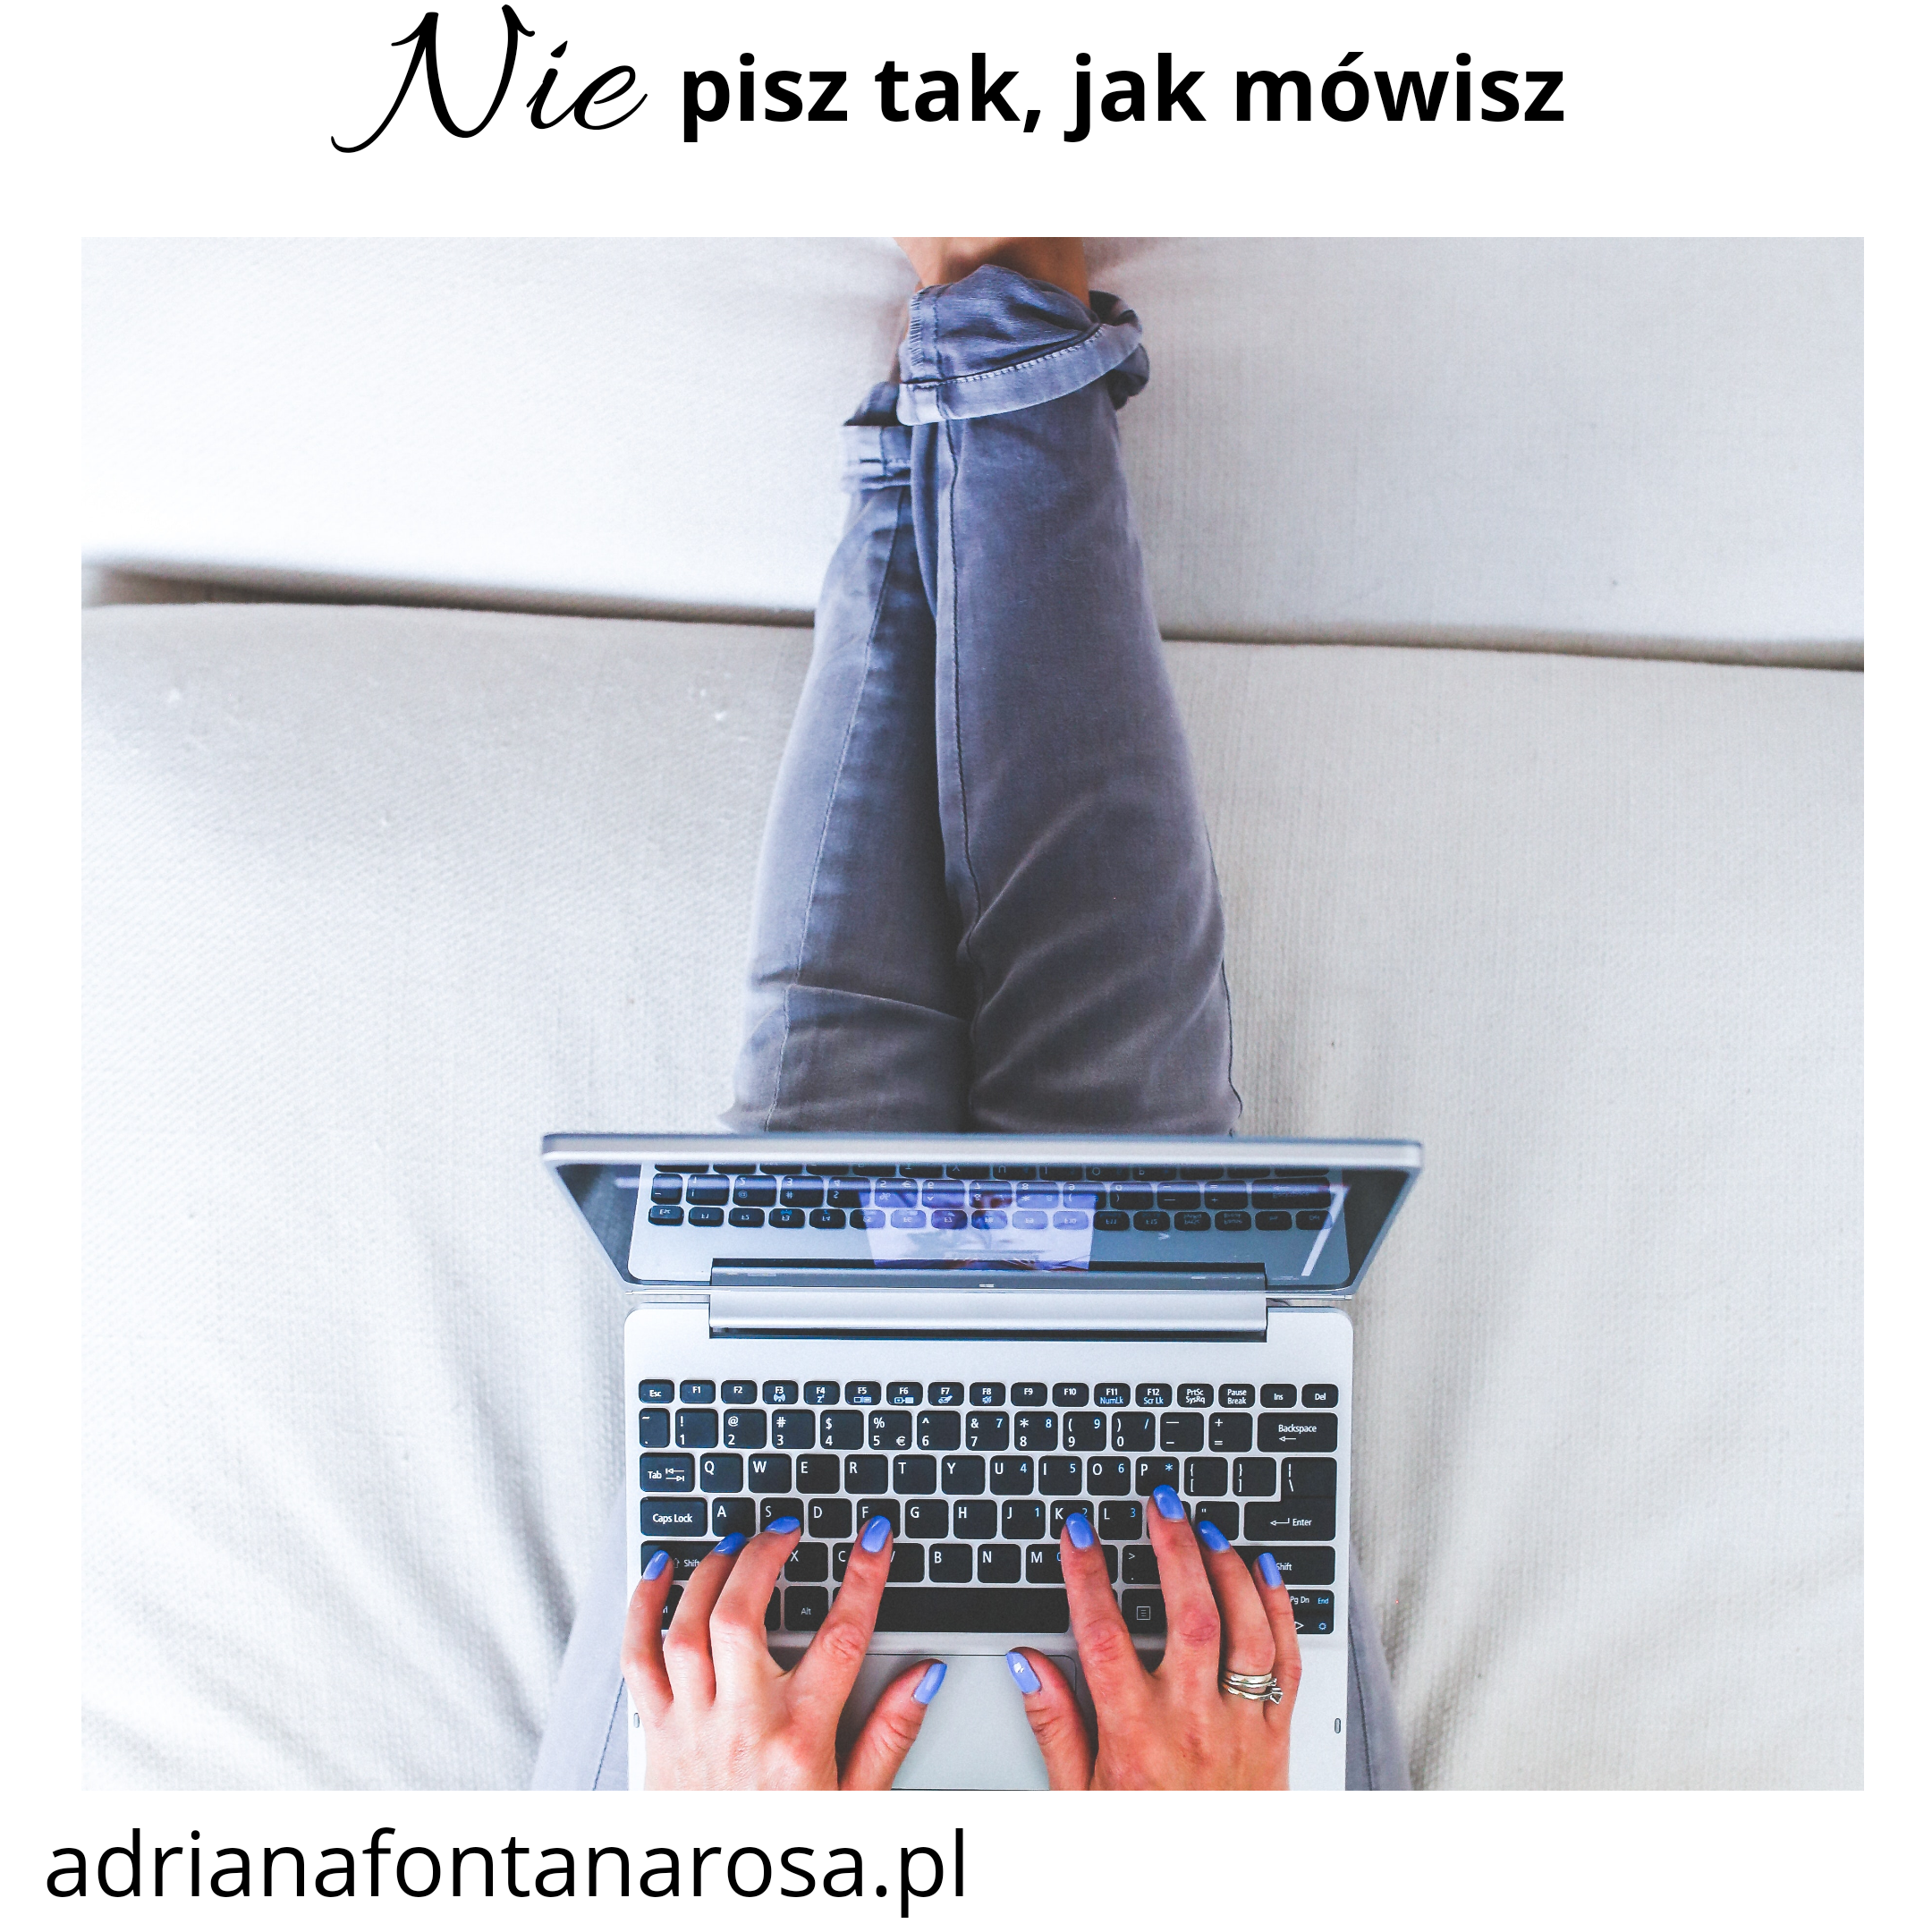 nie pisz tak jak mowisz adrianafontanarosa.pl  - Nie pisz tak, jak mówisz!